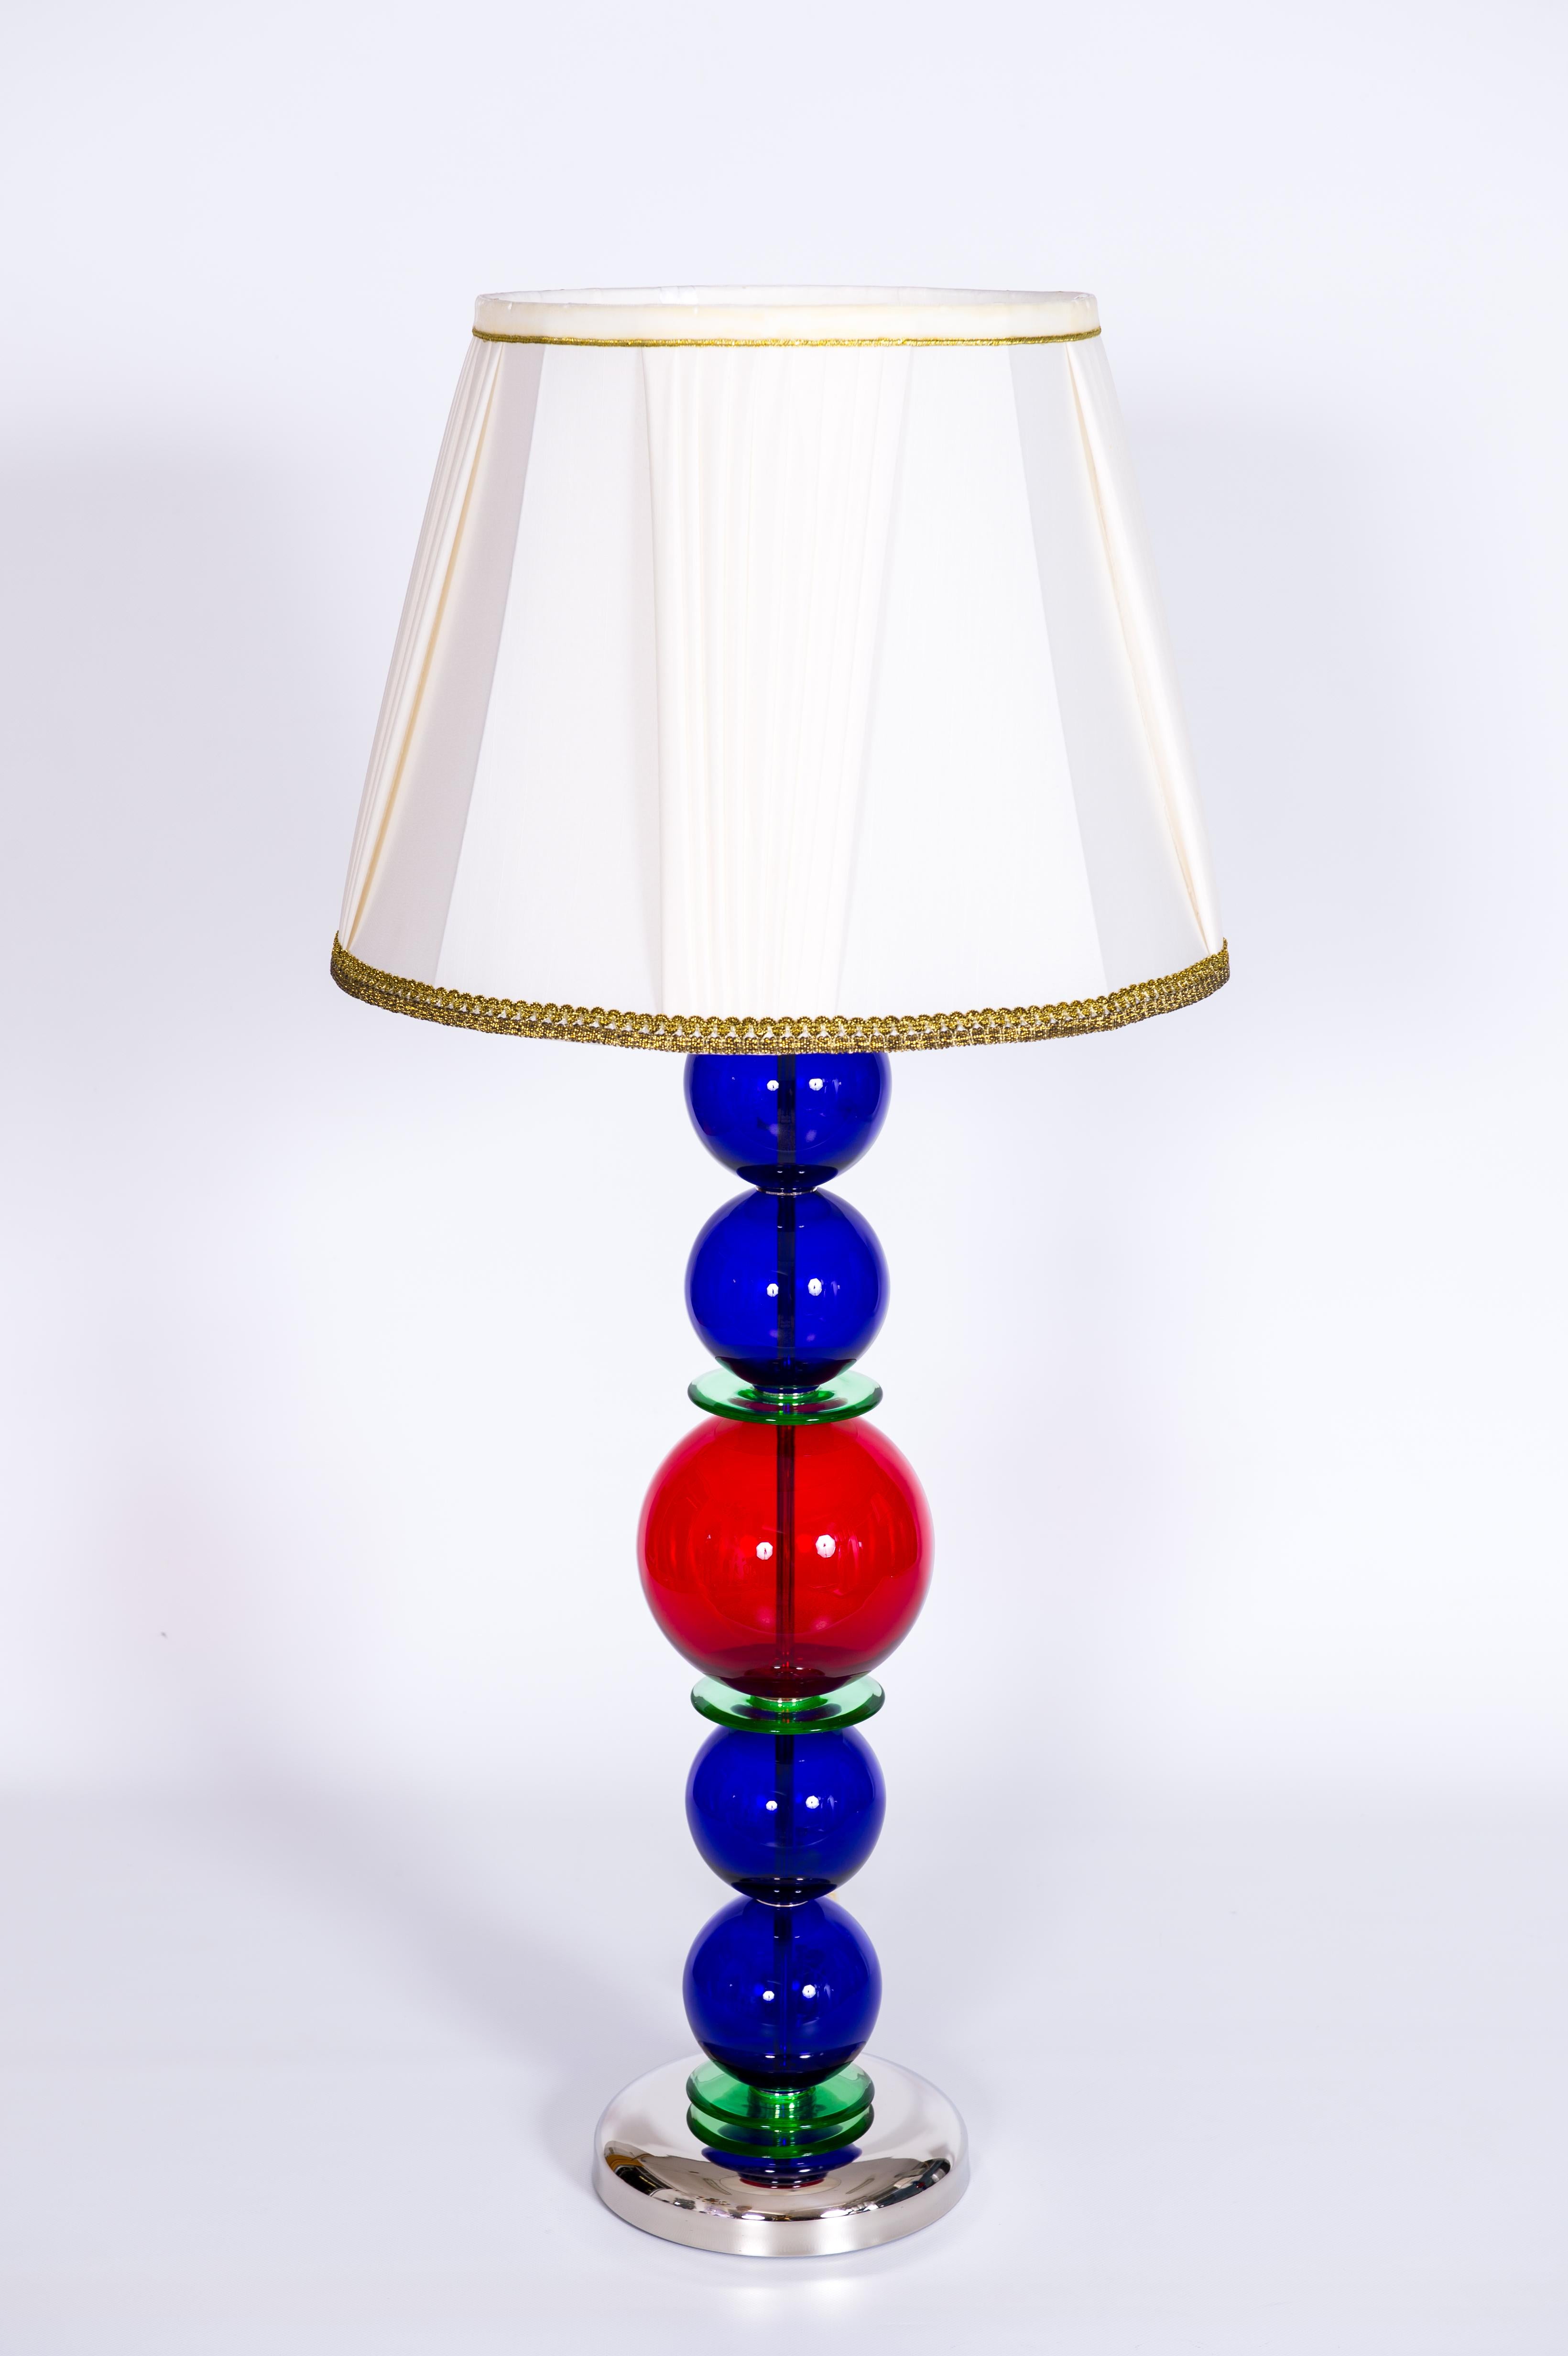 Lampes de table monumentales en verre de Murano personnalisables aux teintes vibrantes, Italie contemporaine.
Ces lampes de table en verre de Murano, méticuleusement fabriquées par des artisans italiens, illustrent l'art et le savoir-faire du design